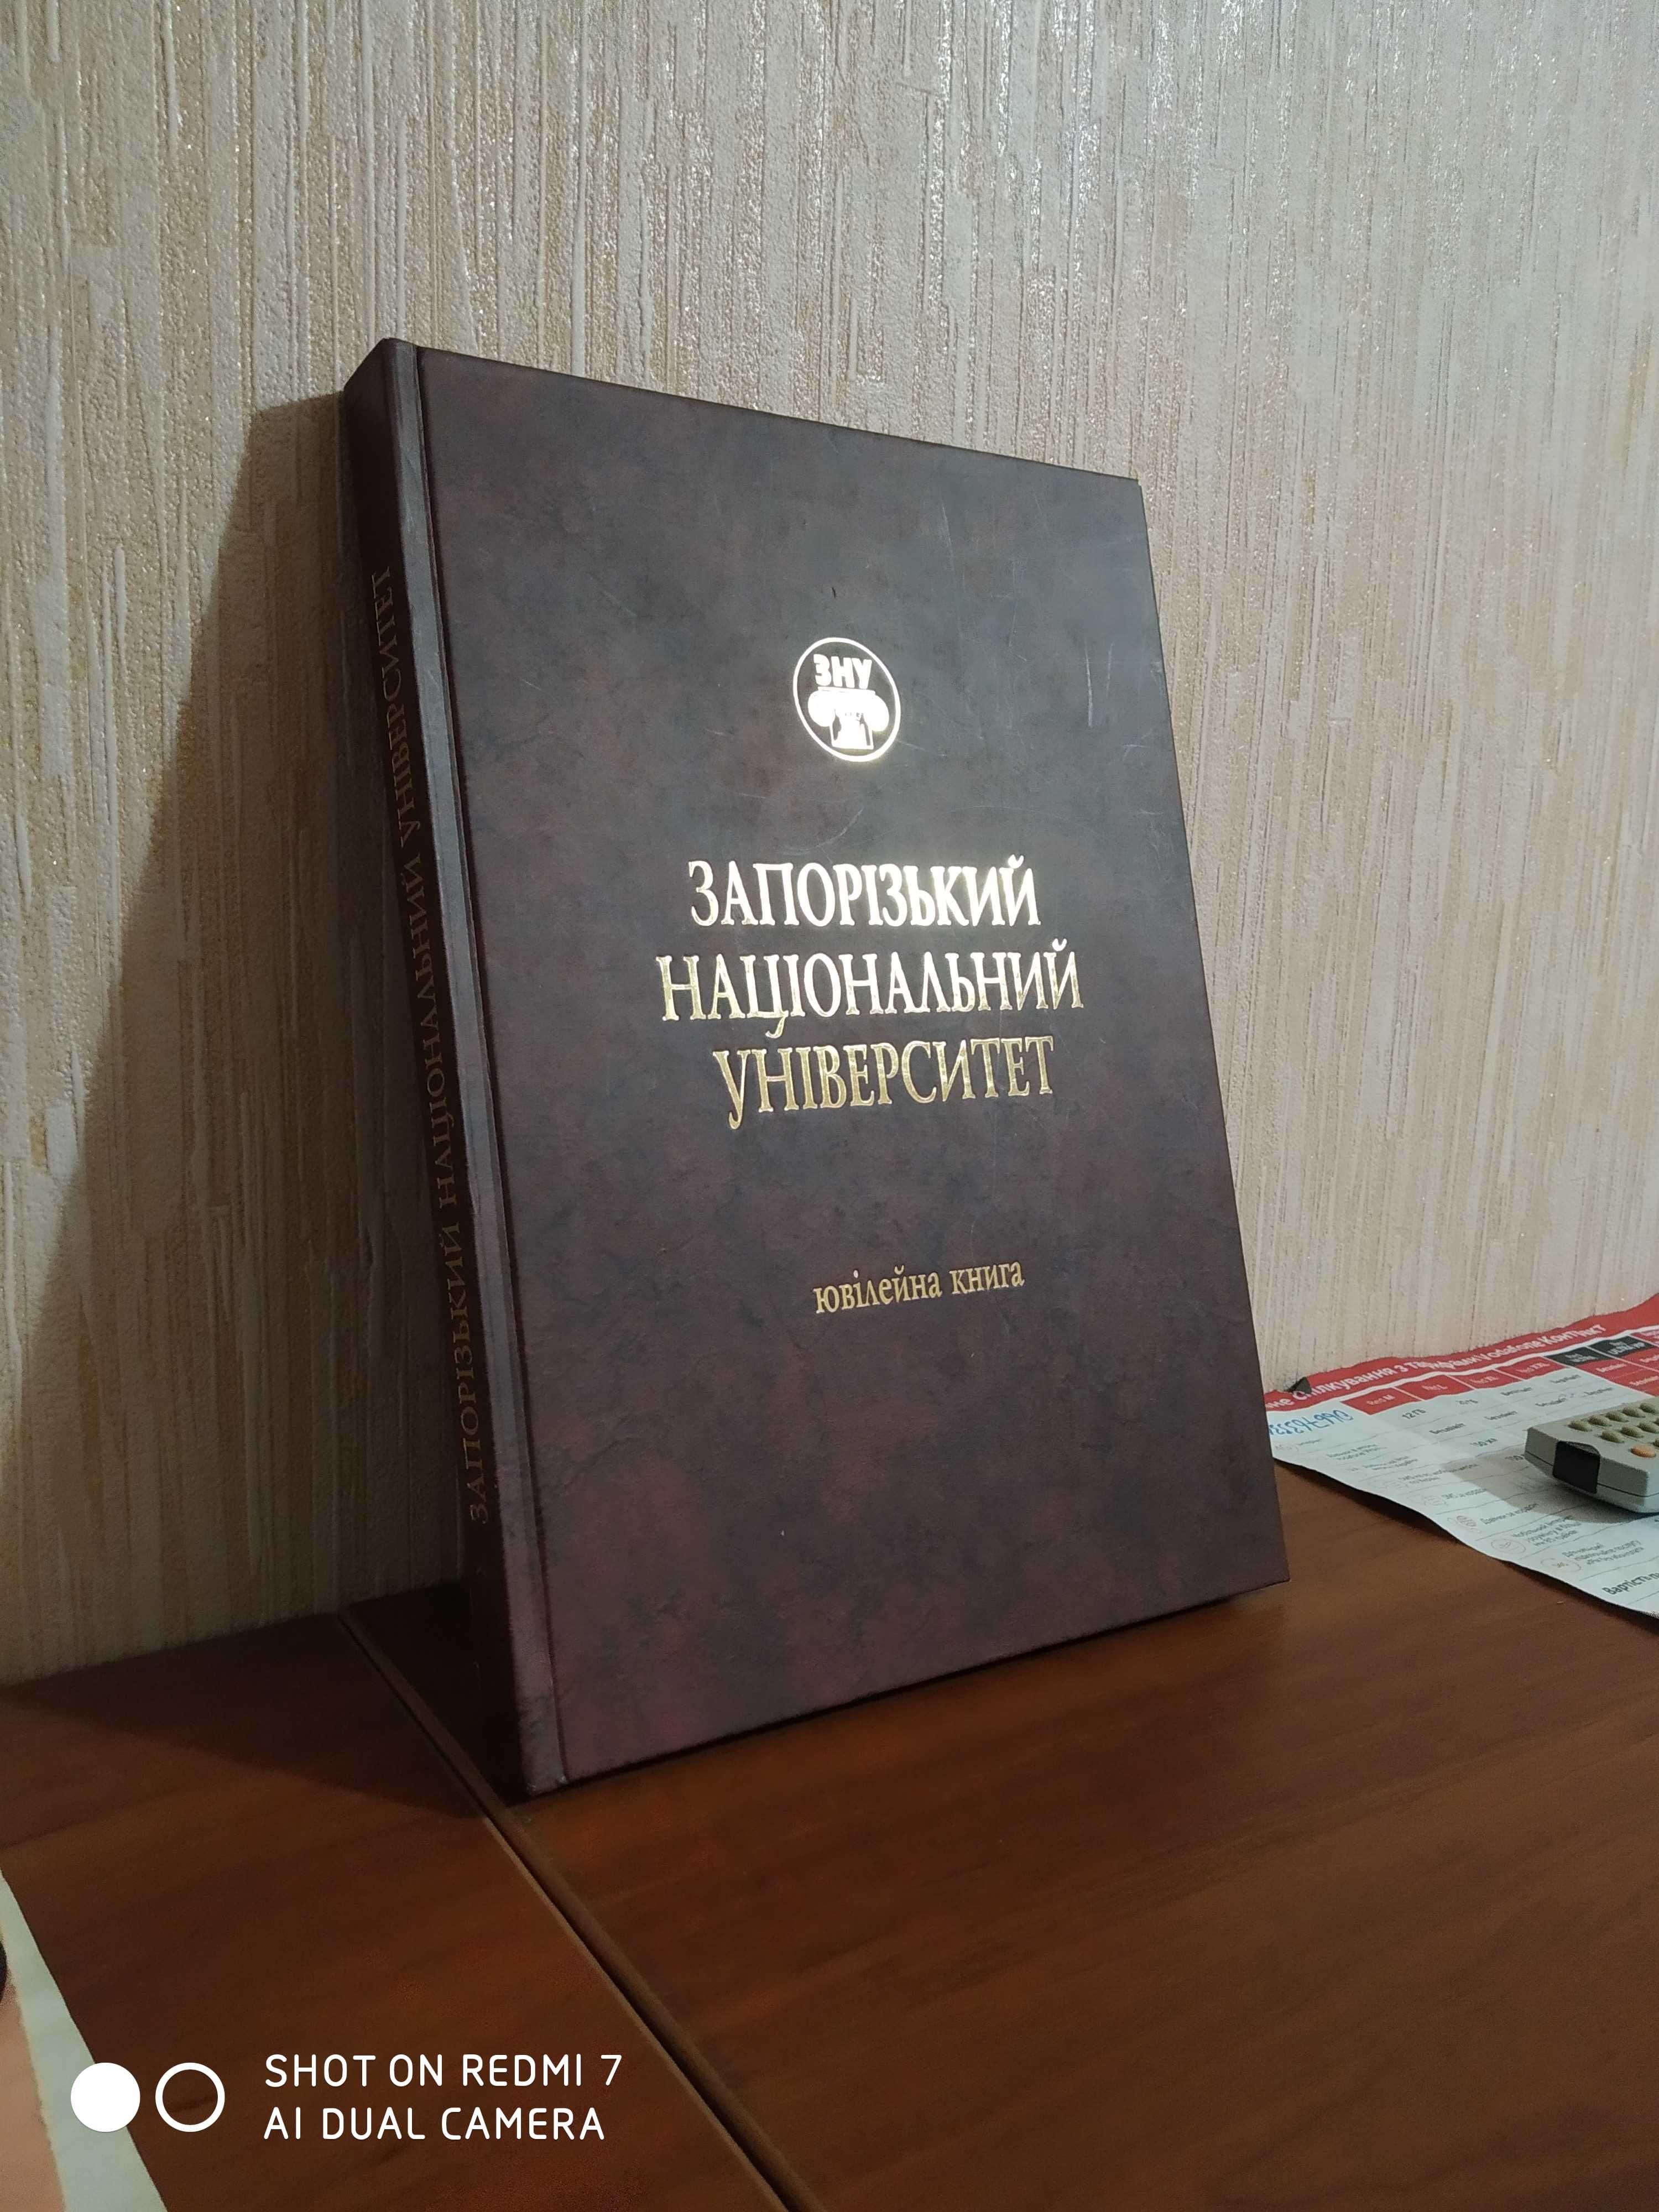 Юбилейная книга Запорожский национальный университет